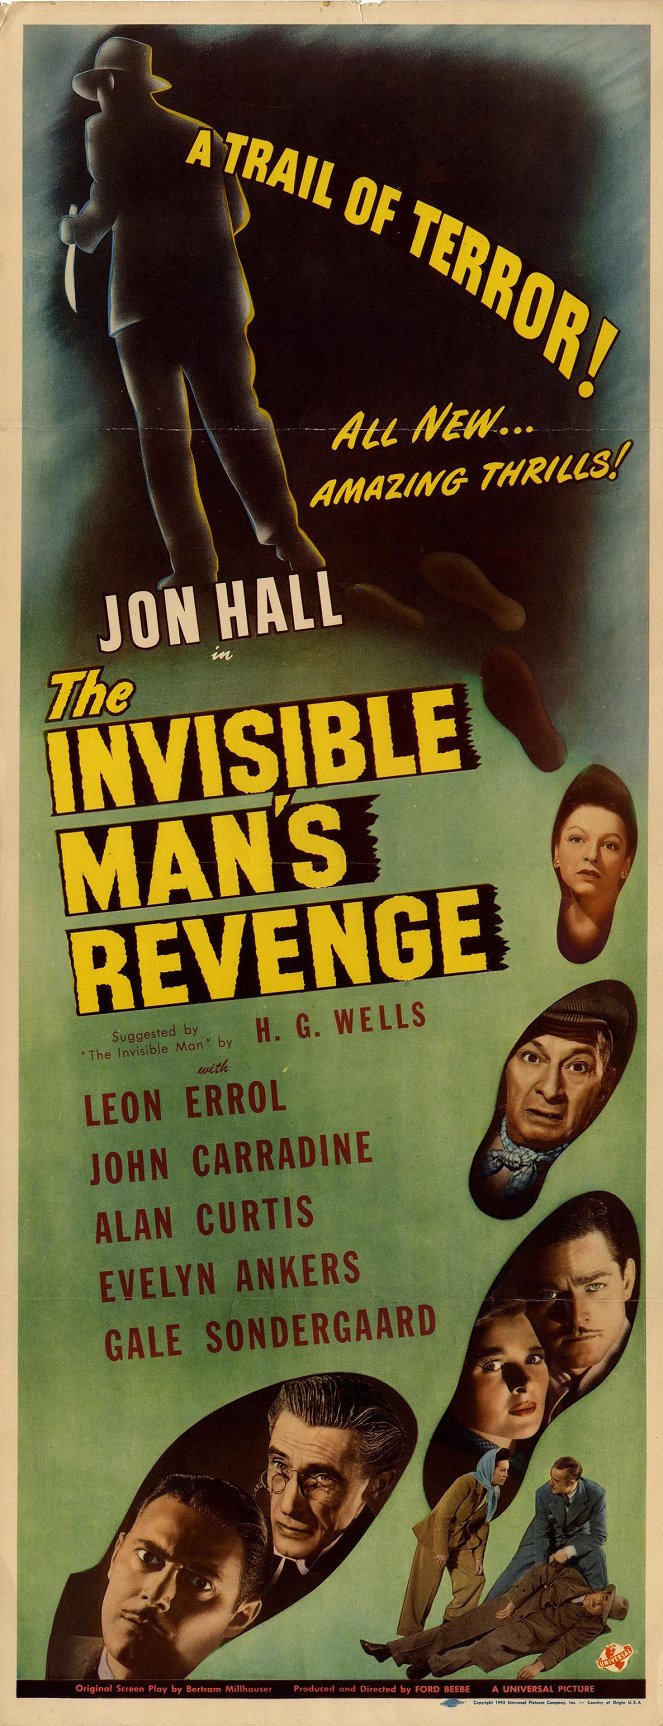 La venganza del hombre invisible - Carteles